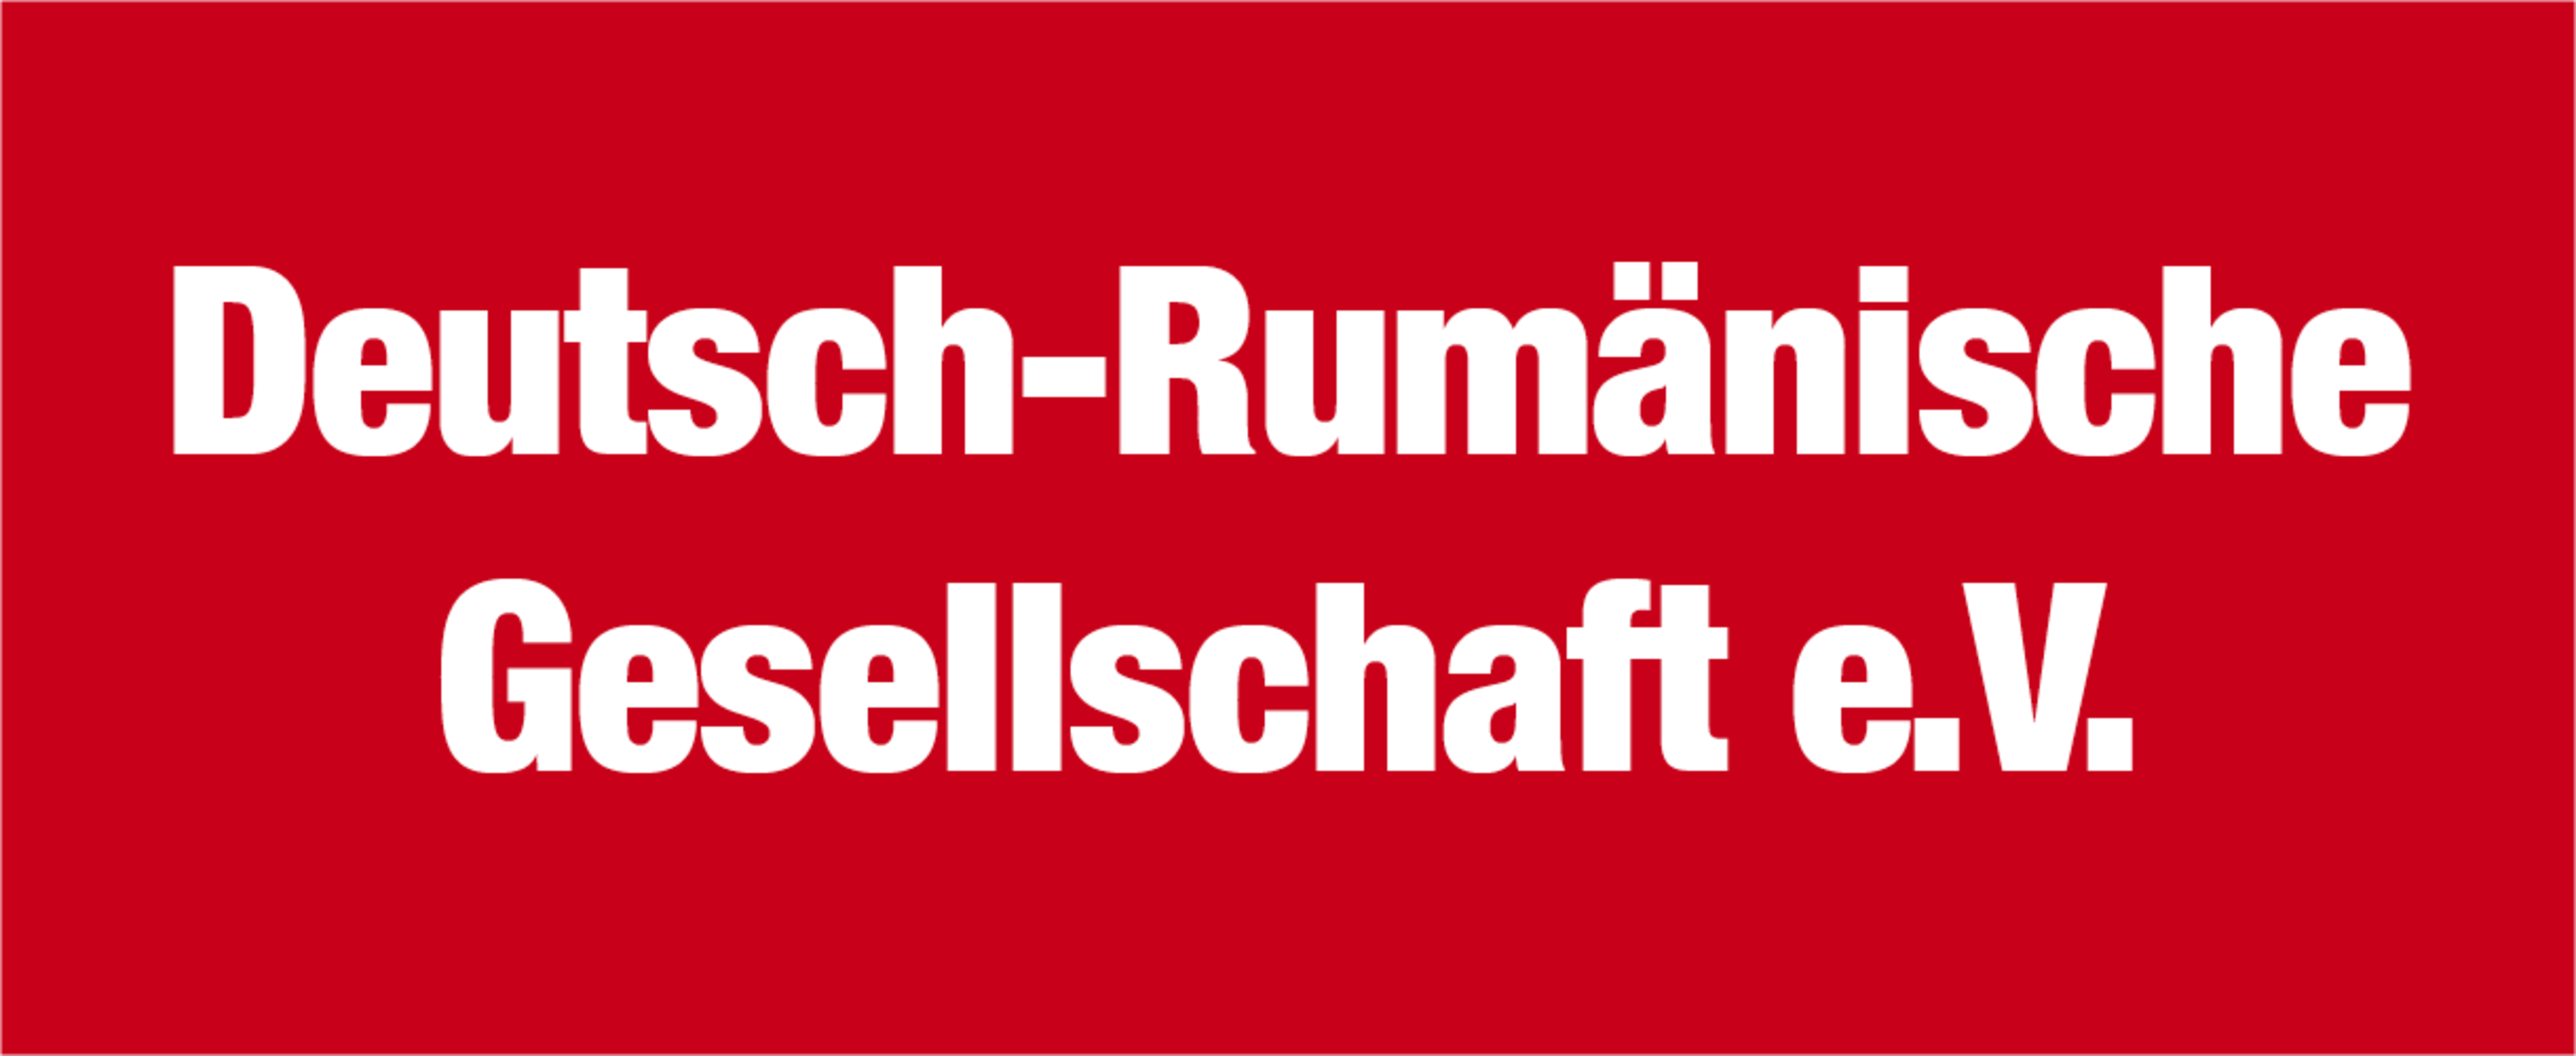 Deutsch-Rumänische Gesellschaft e.V.